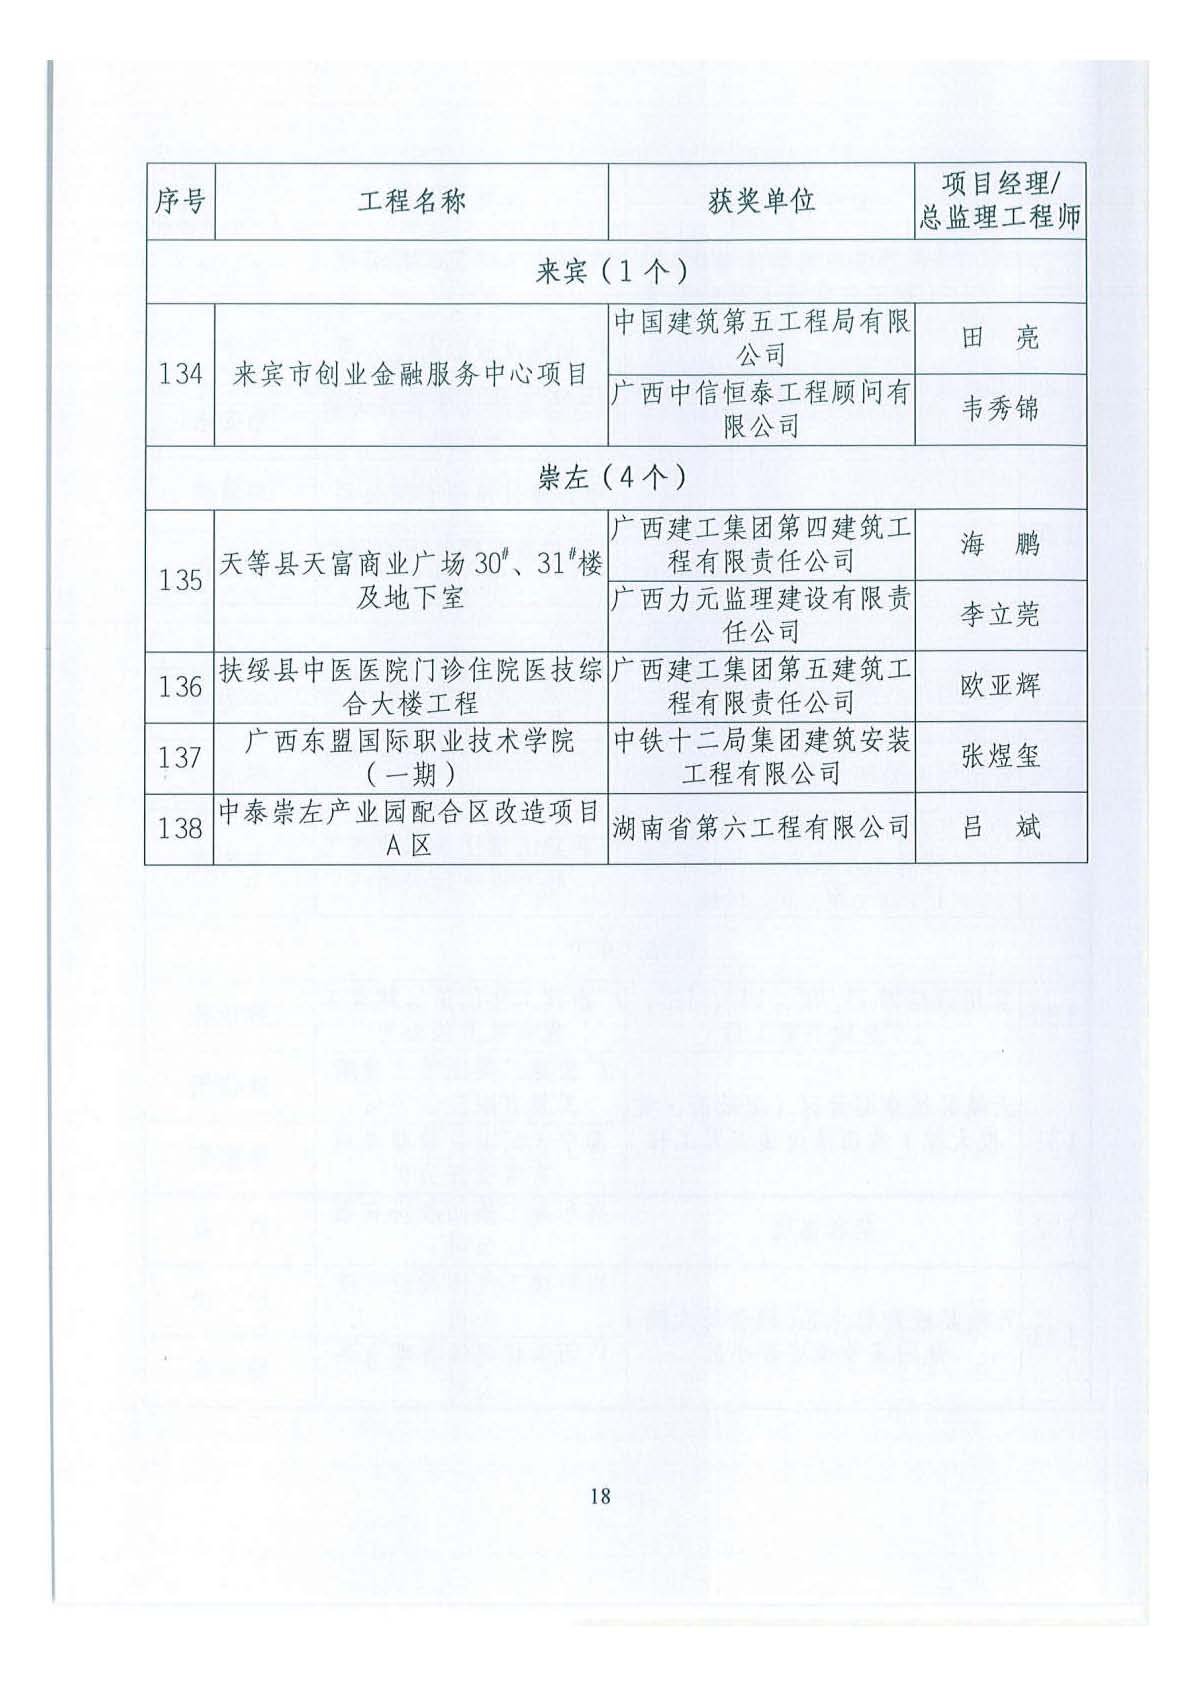 关于公布2018年下半年广西壮族自治区建设工程施工安全文明标准化工地的通知 _页面_18.jpg